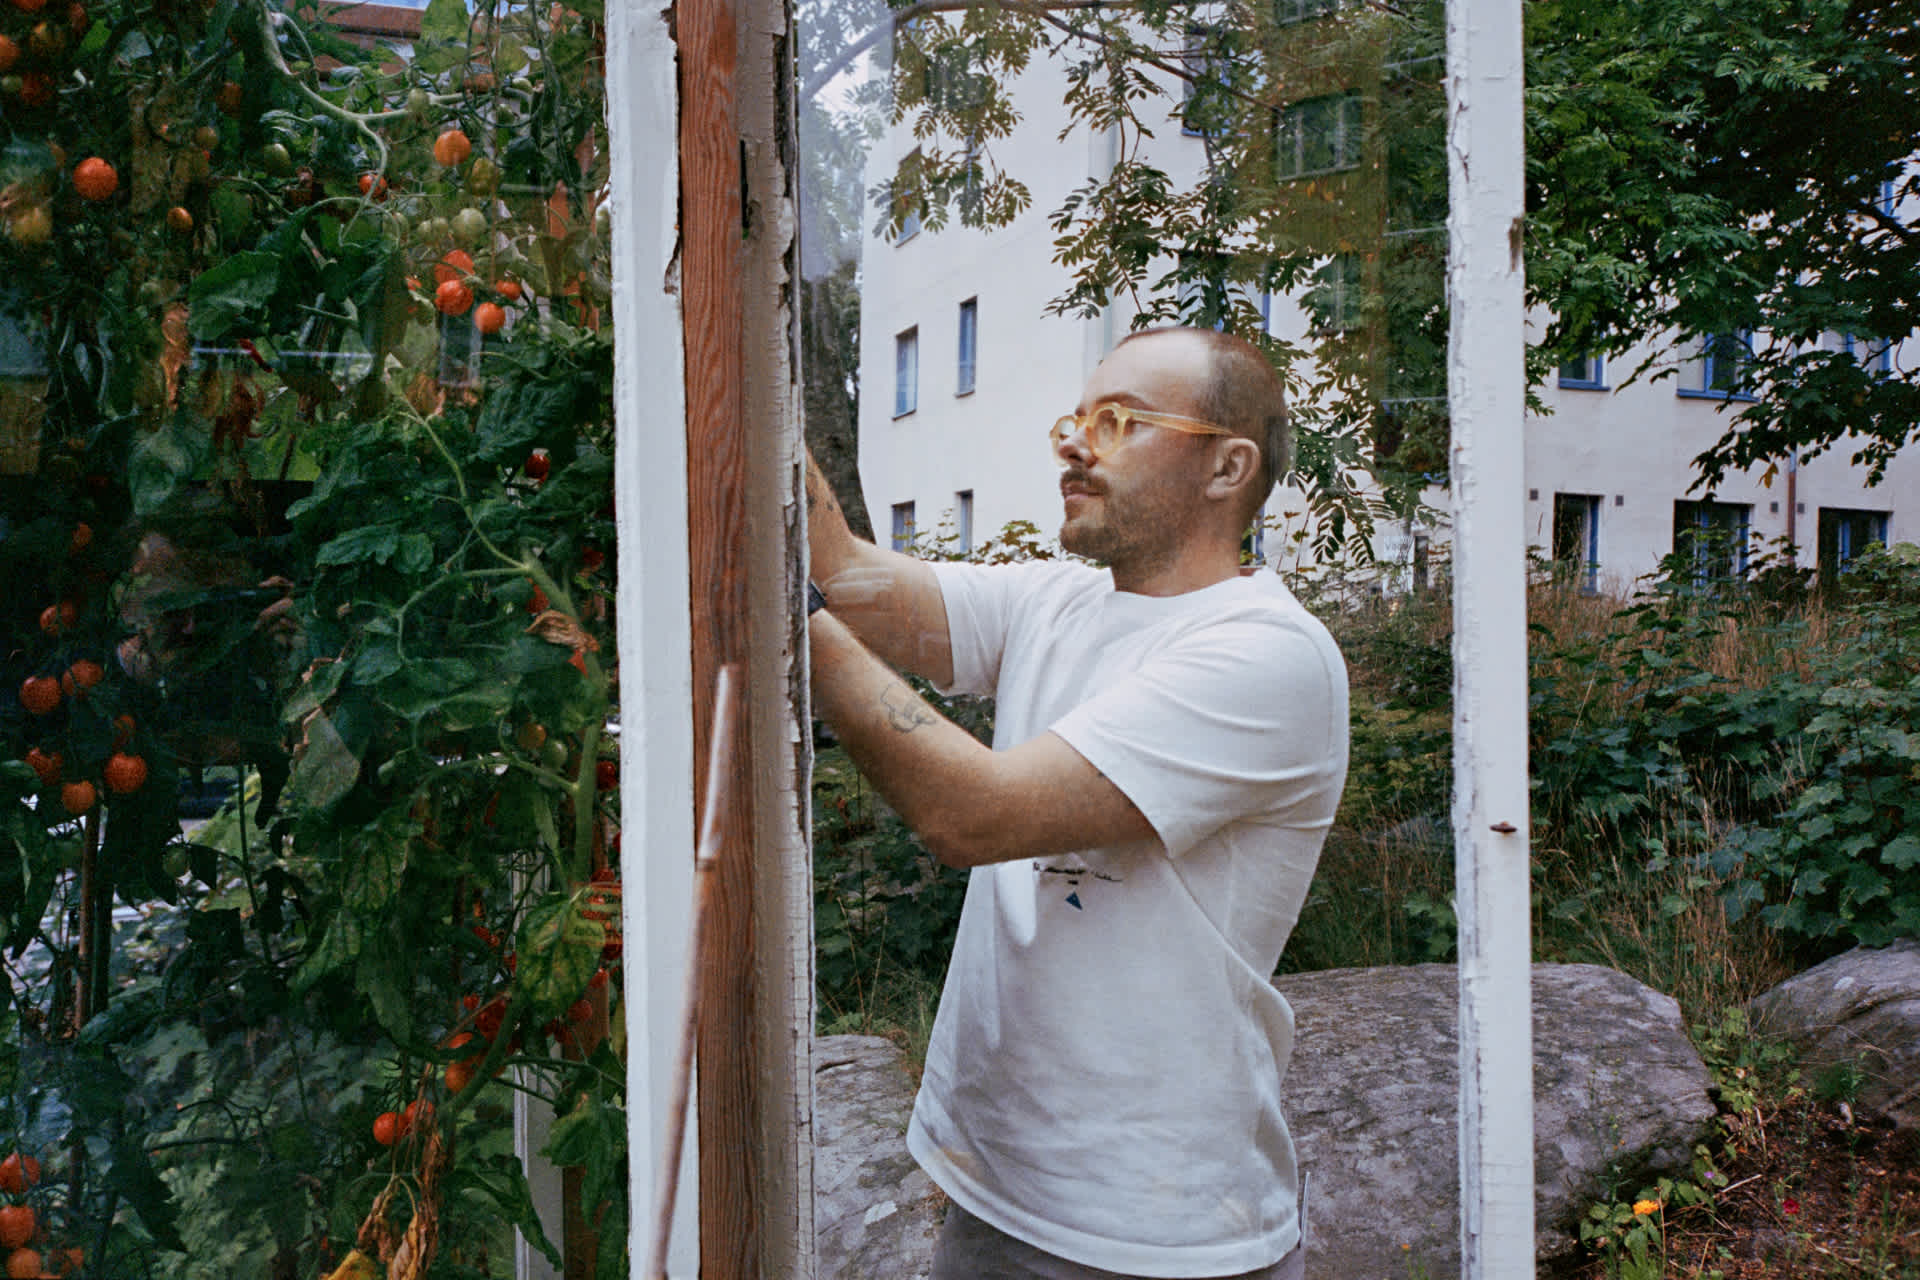 Erik Bohnsack gardening and harvesting tomatoes